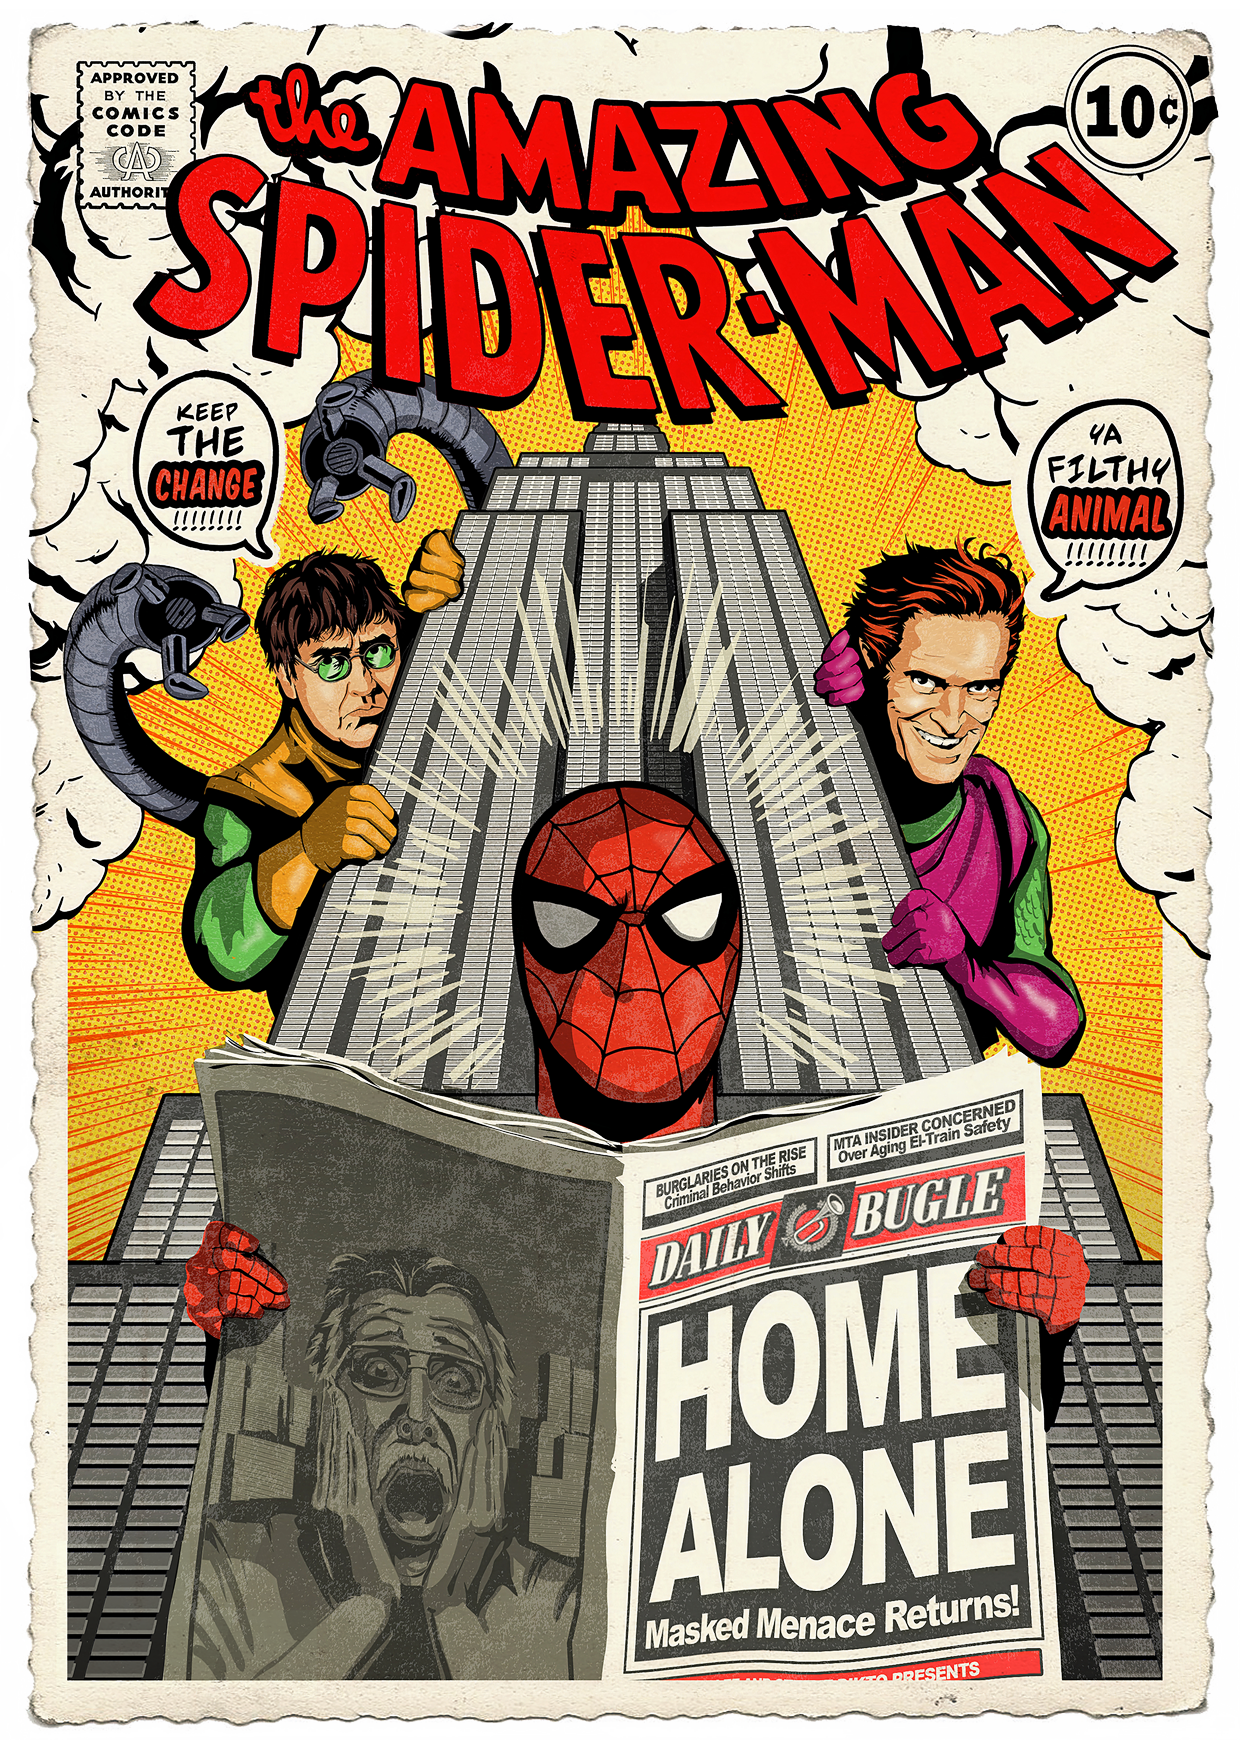 Spider-man Home Alone